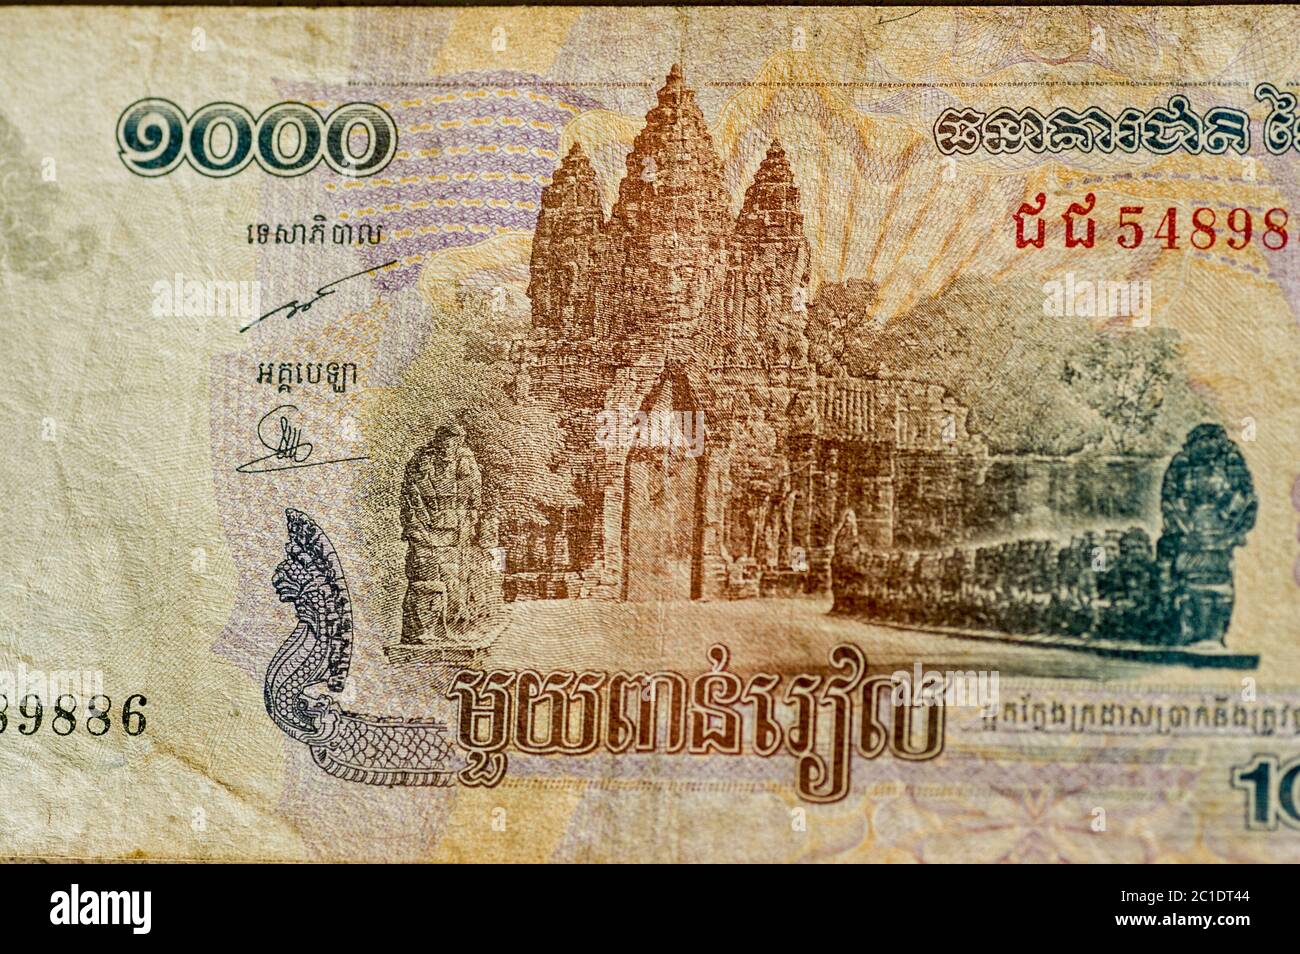 Teil einer Tausend Riels Banknote aus Kambodscha, die das Victory Gate in Angkor Thom zeigt, Teil des UNESCO-Weltkulturerbes Angkor. Gebrauchte BA Stockfoto